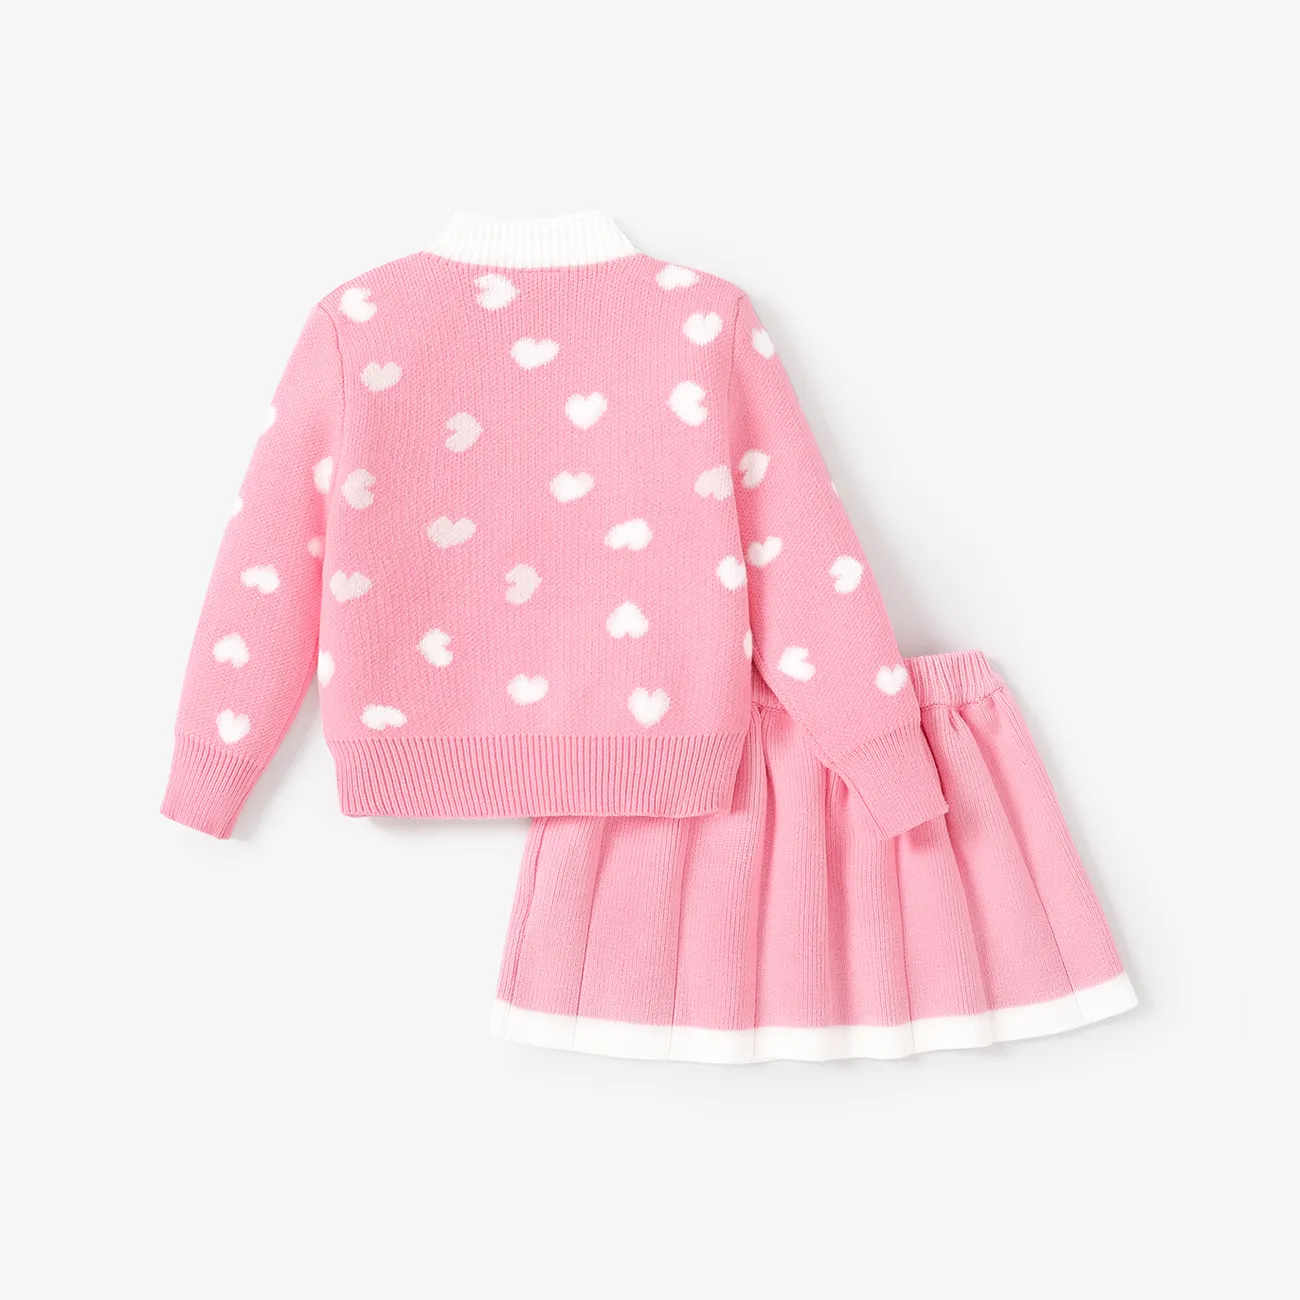 2件 小童 女 層次 甜美 套裝裙 粉色 big image 1